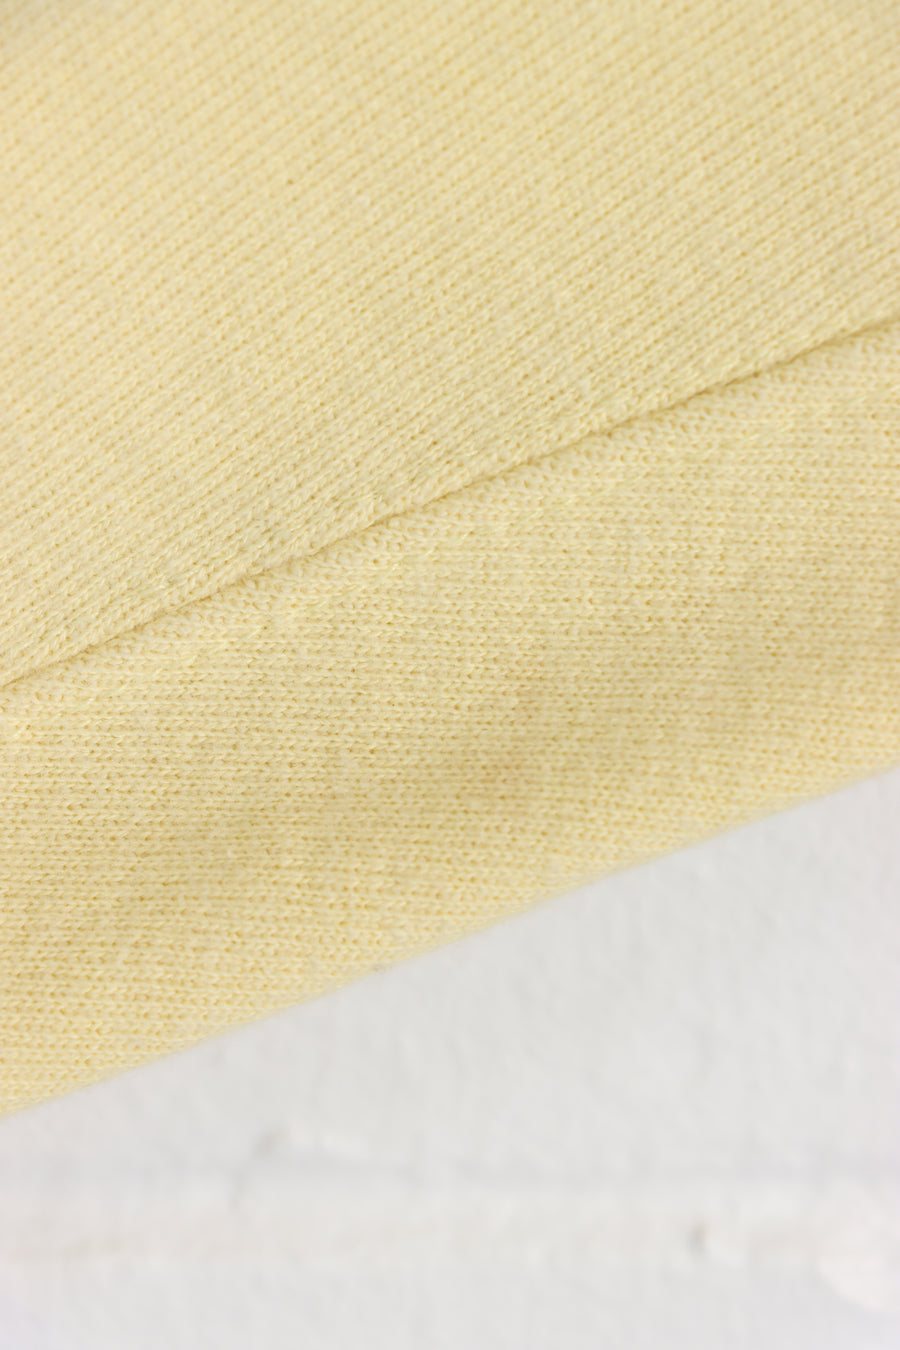 CHAMPION Reverse Weave Light Yellow Sweatshirt USA Made (L)